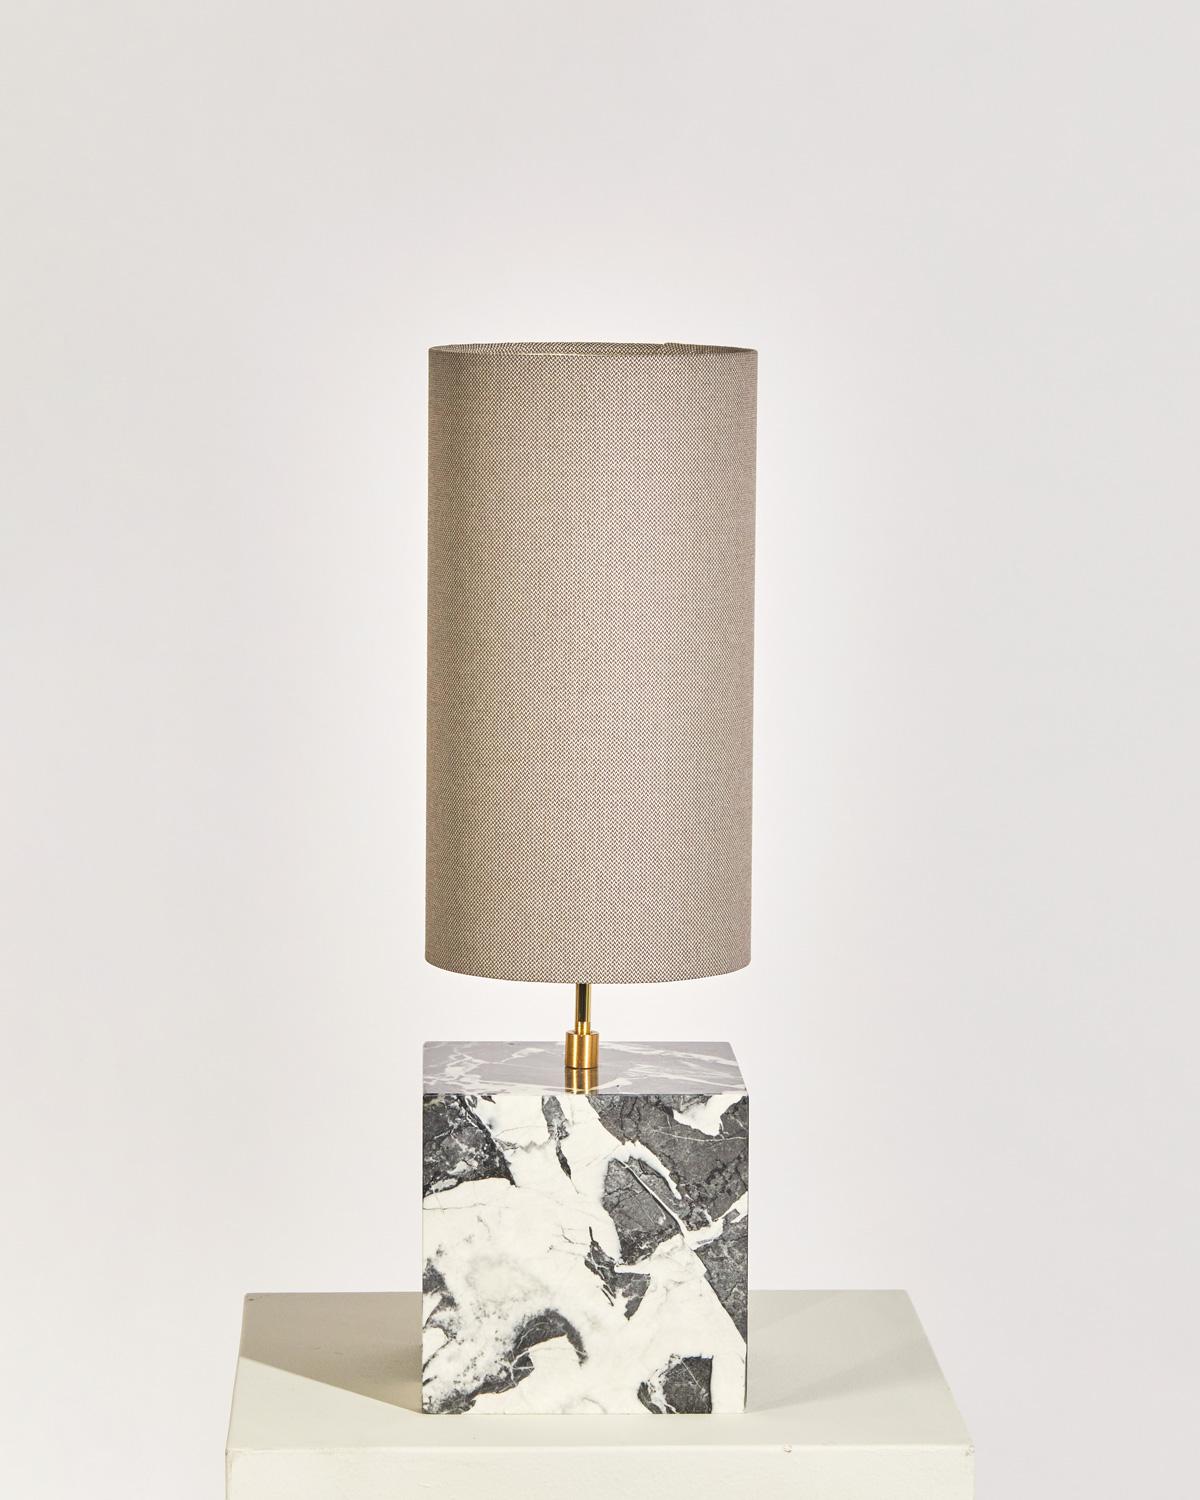 Die Coexist Tischleuchte besteht aus einem Marmorwürfelsockel und einem Lampenschirm aus recyceltem Stoff.

Die Leuchte dient als skulpturaler Mittelpunkt eines jeden Raumes und strahlt ein weiches, warmes Licht aus, das den Betrachter in die